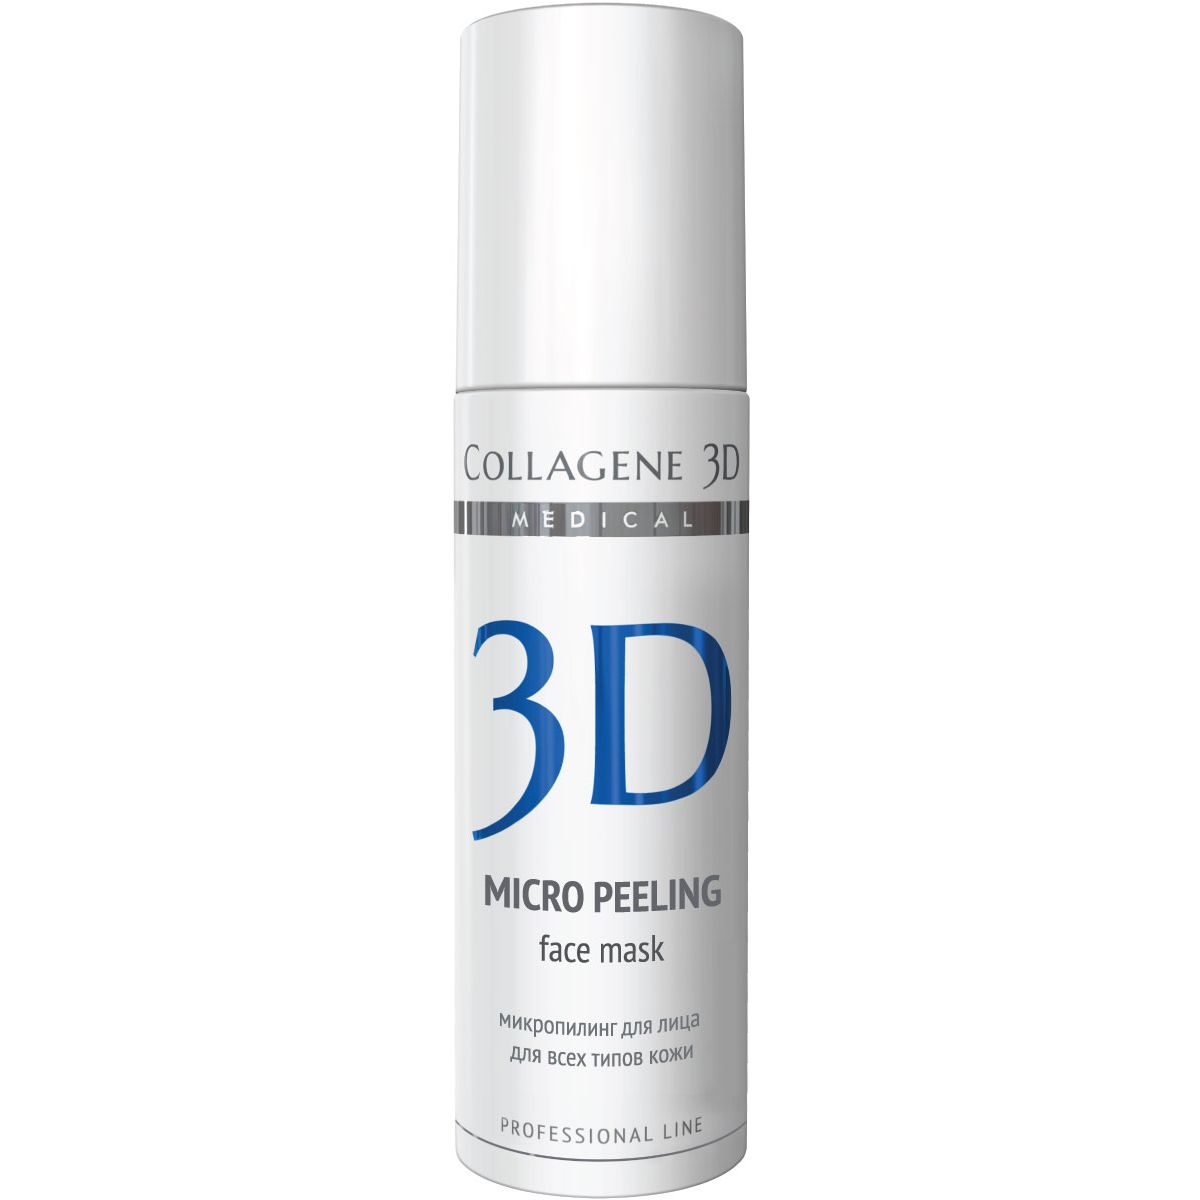 Пилинг для лица Medical Collagene 3D Micro Peeling Face Mask Professional 150мл medical collagene 3d пилинг с папаином и экстрактом шисо natural peel 150 гр